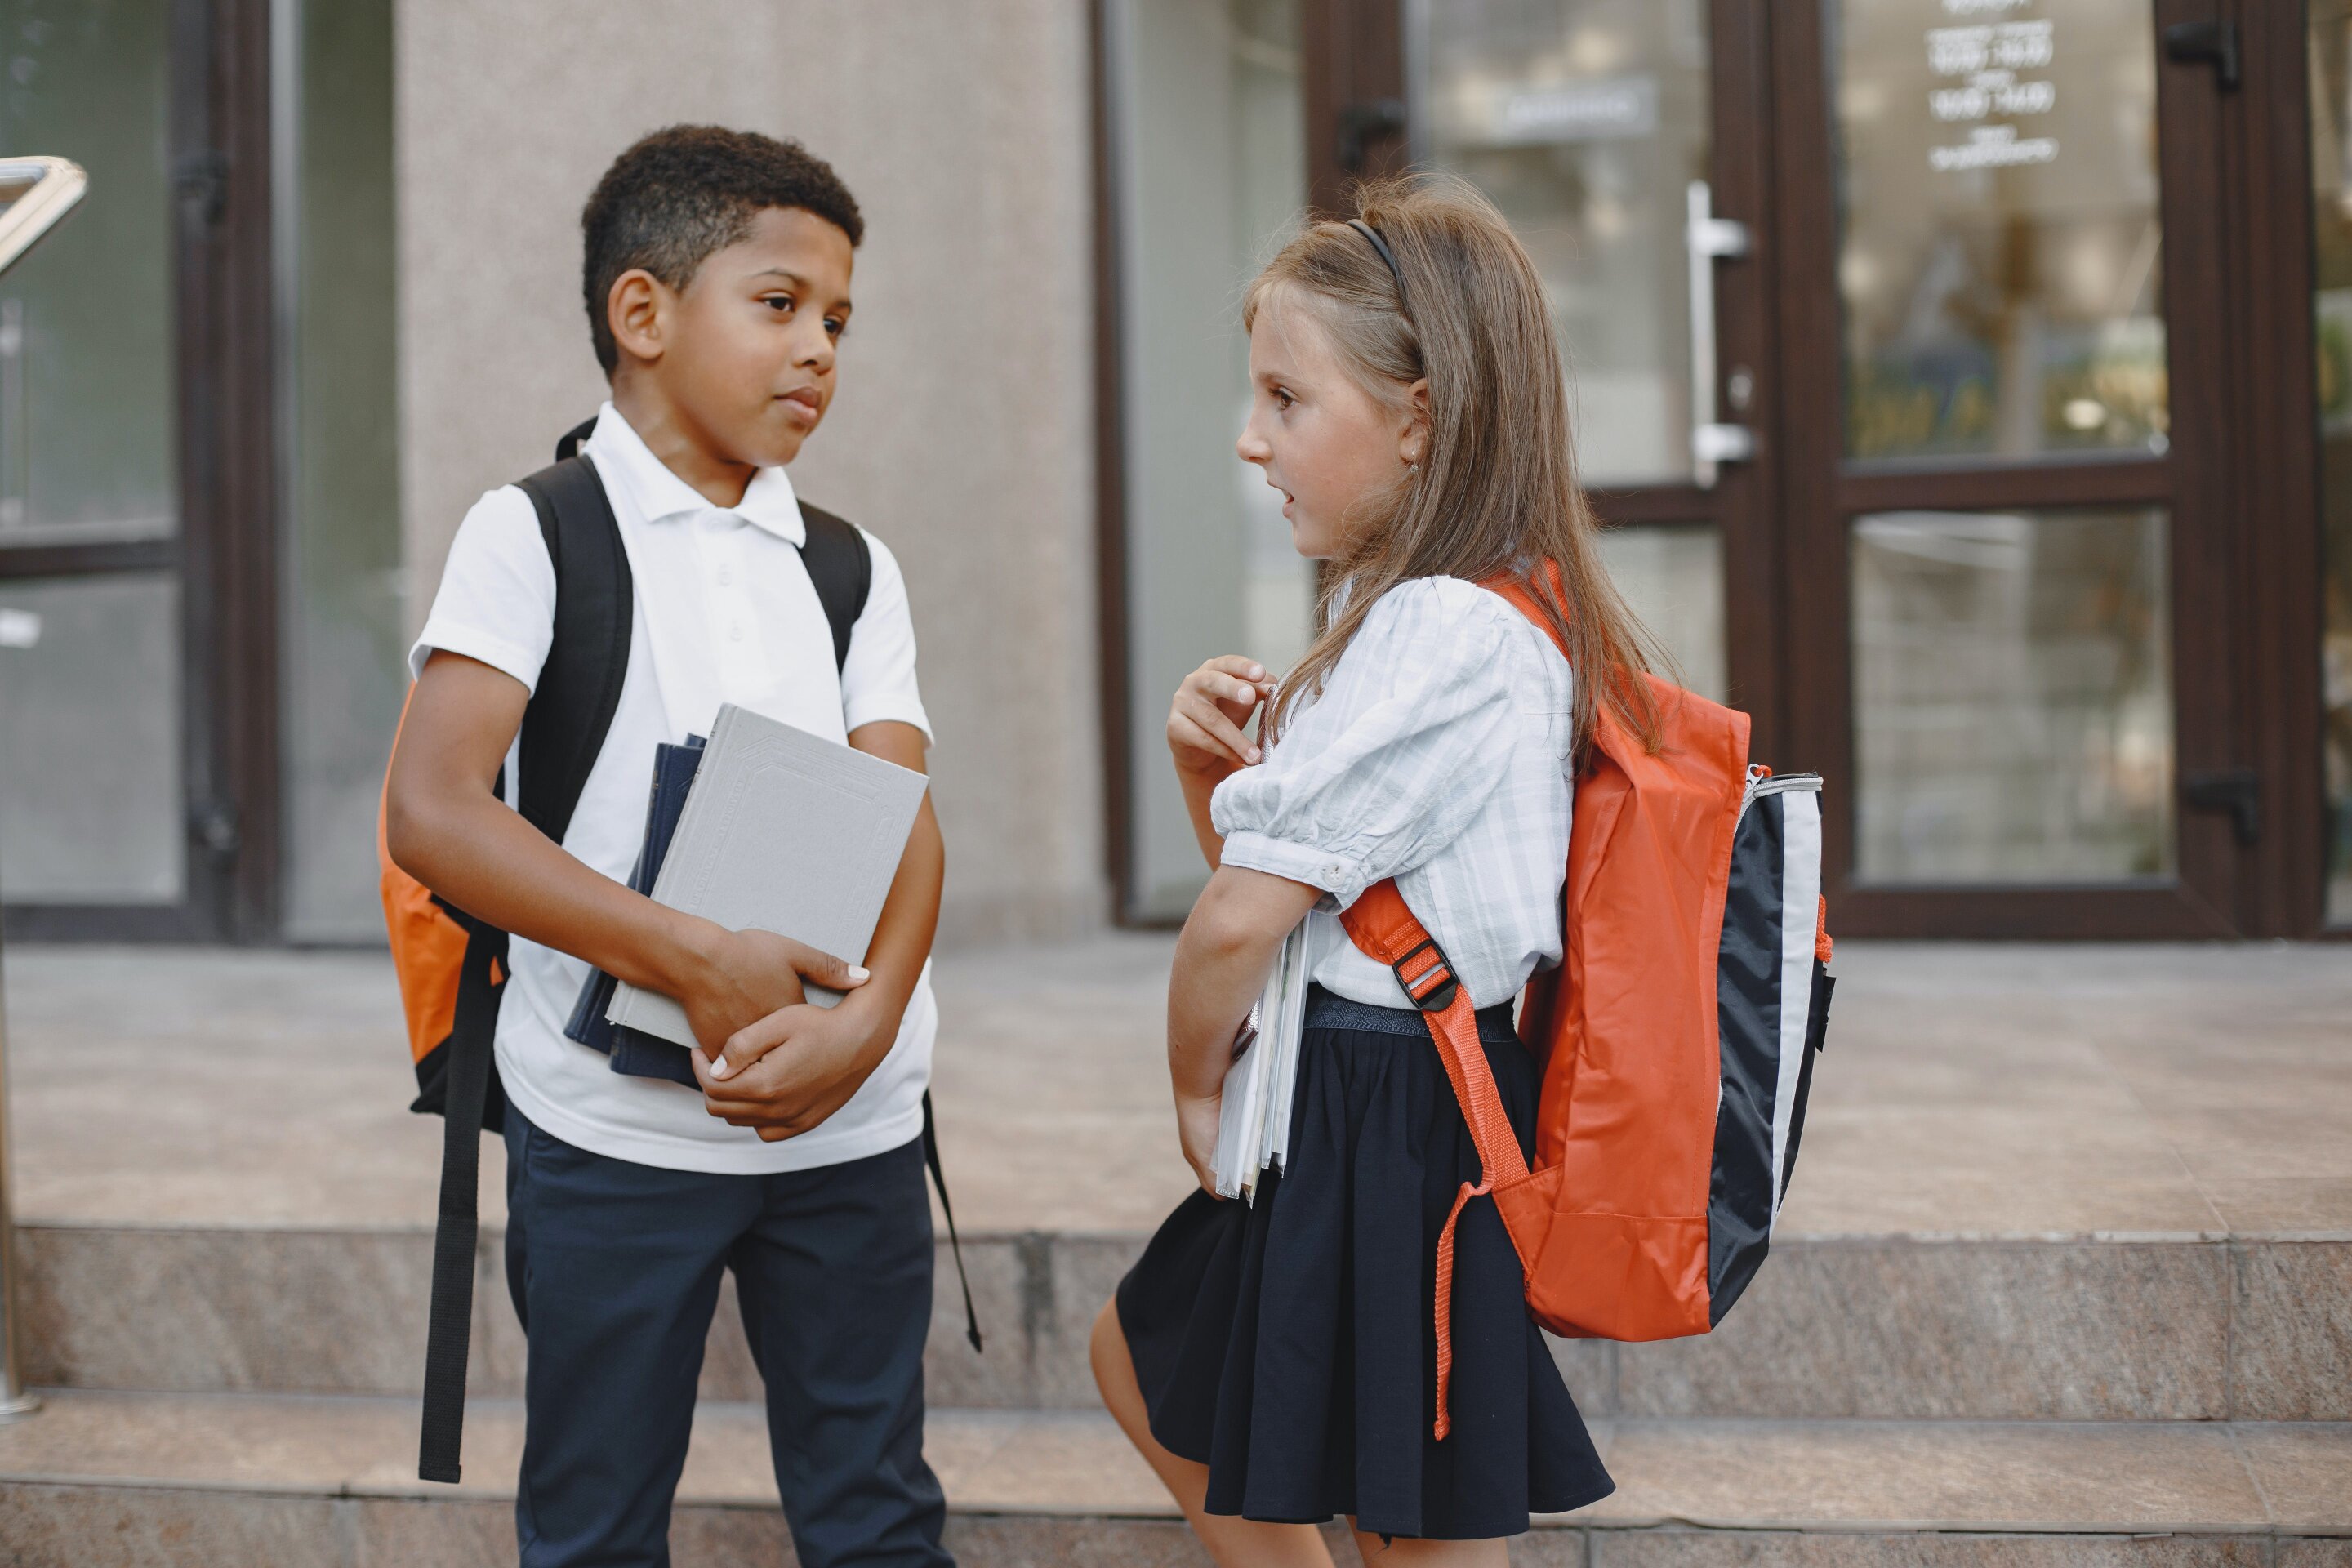 Do uniforms improve school safety? A Florida district debates the